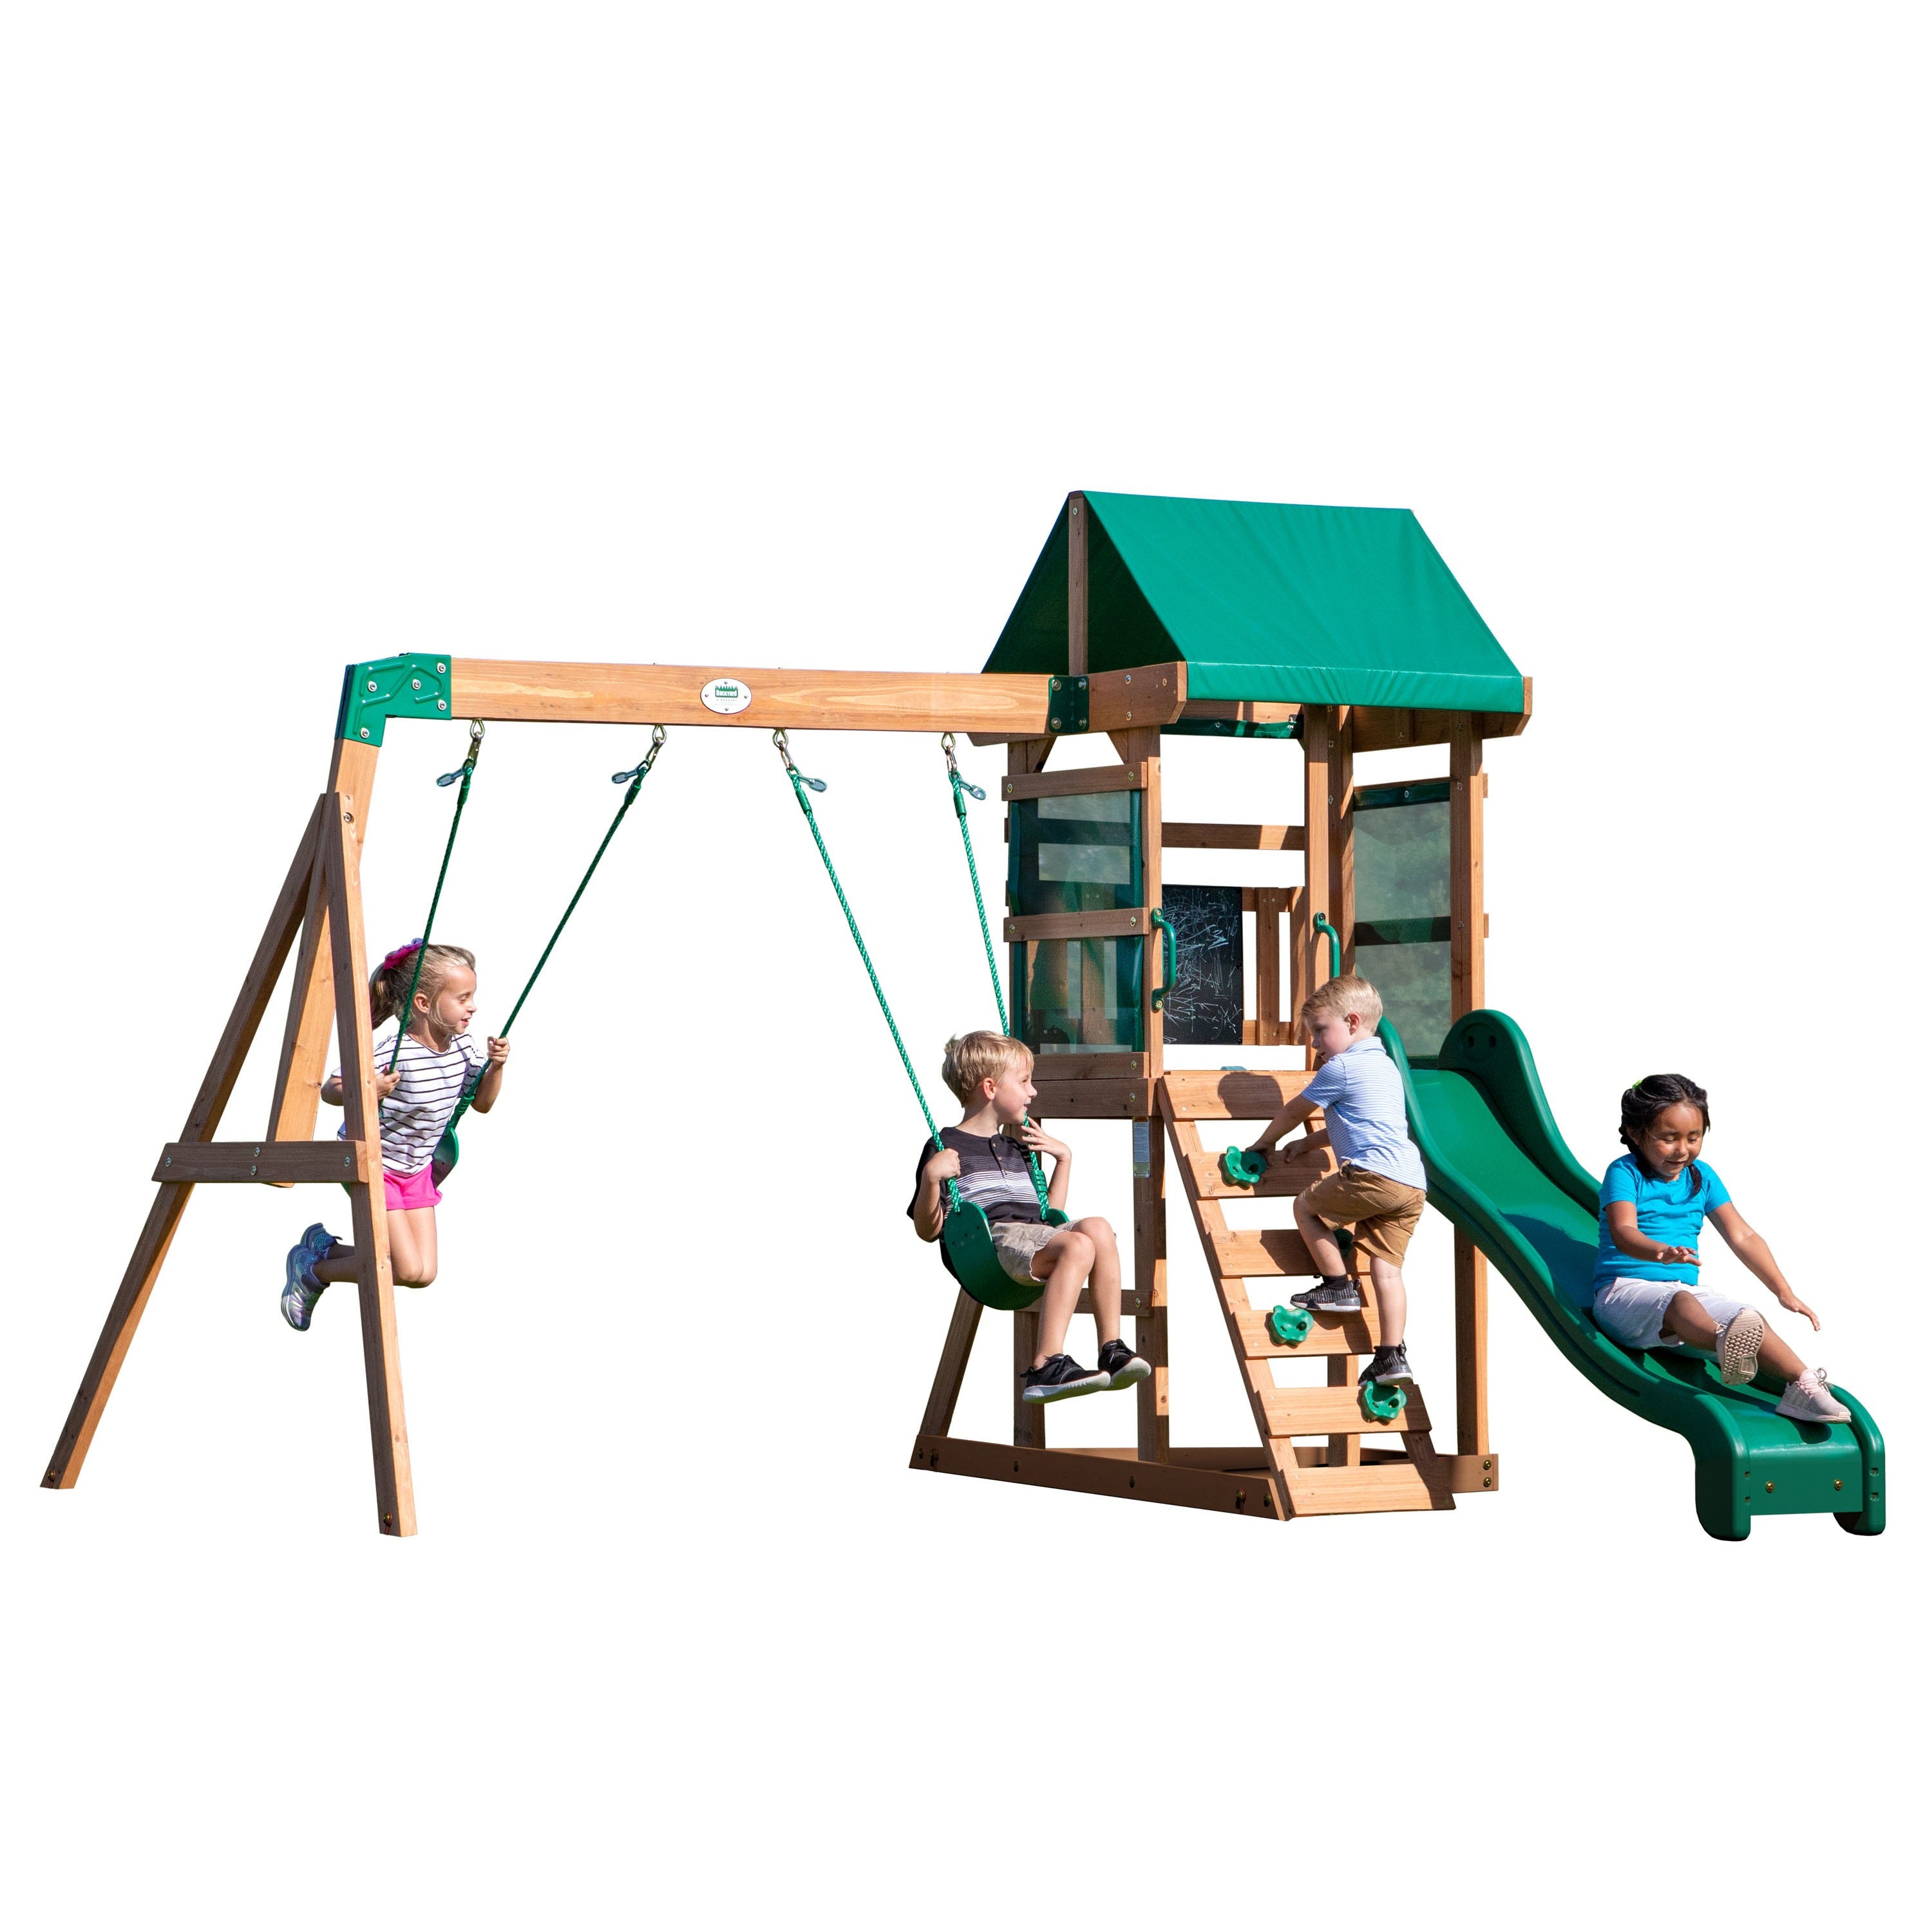 Aire de jeux en bois, Avec balançoire / toboggan / bac de sable / échelle, Maison enfant extérieur Backyard Discovery Buckley Hill